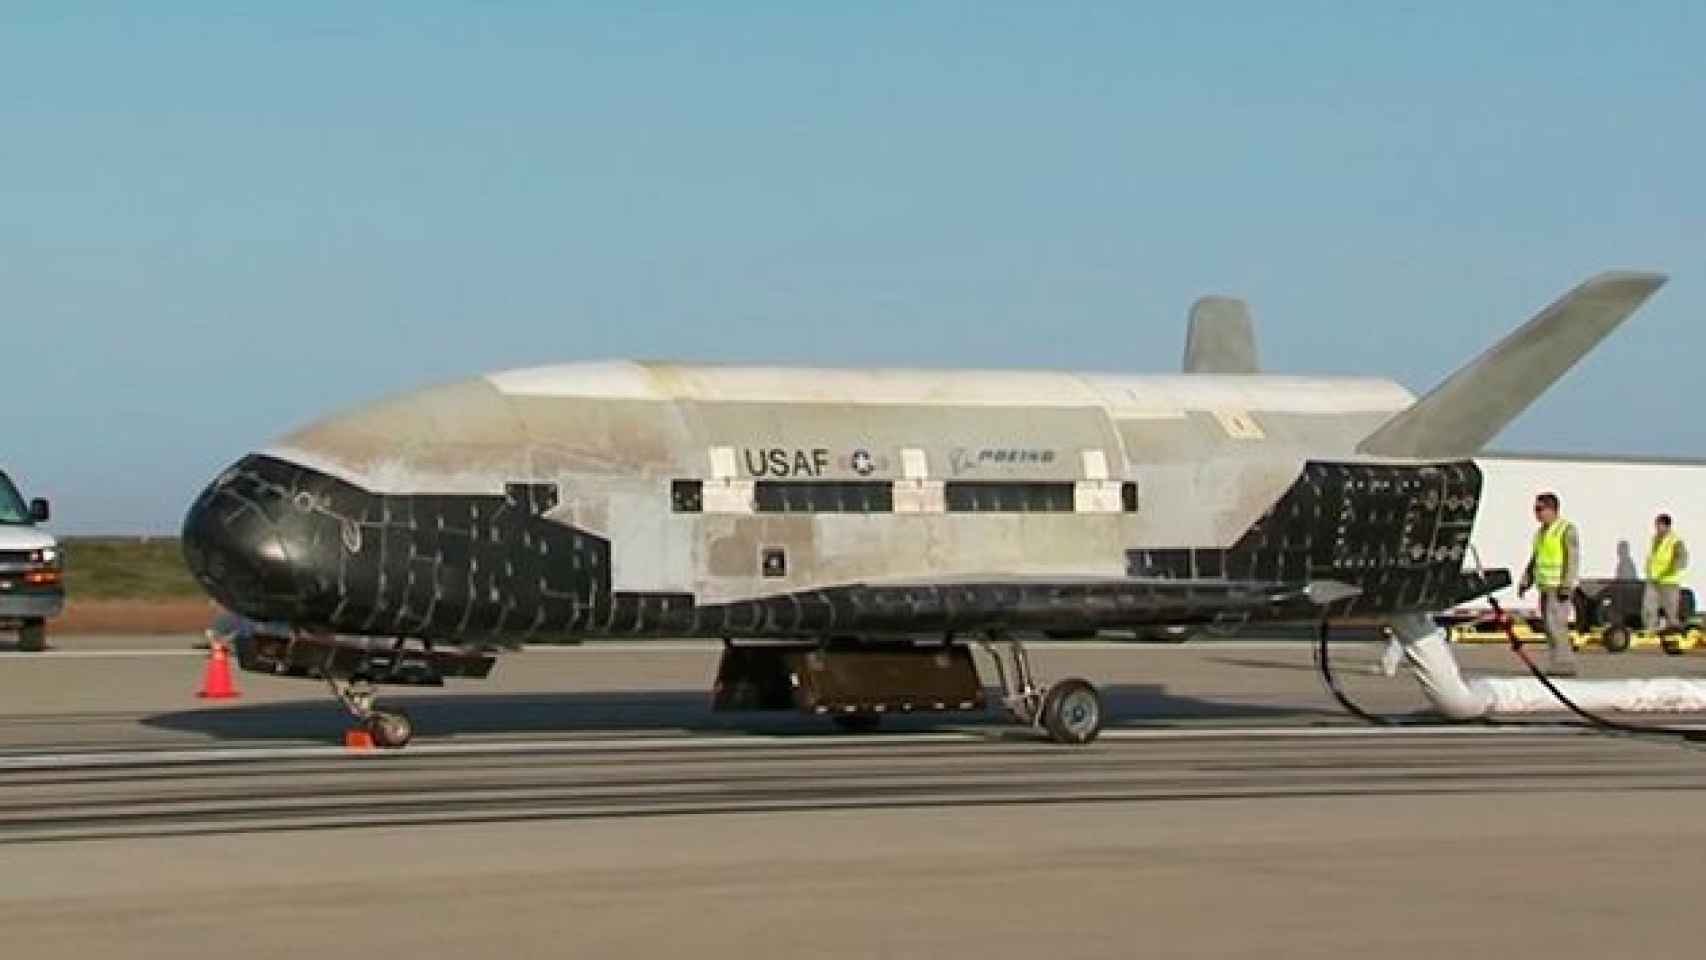 El avión espacial secreto del Pentágono regresa tras 718 días en órbita